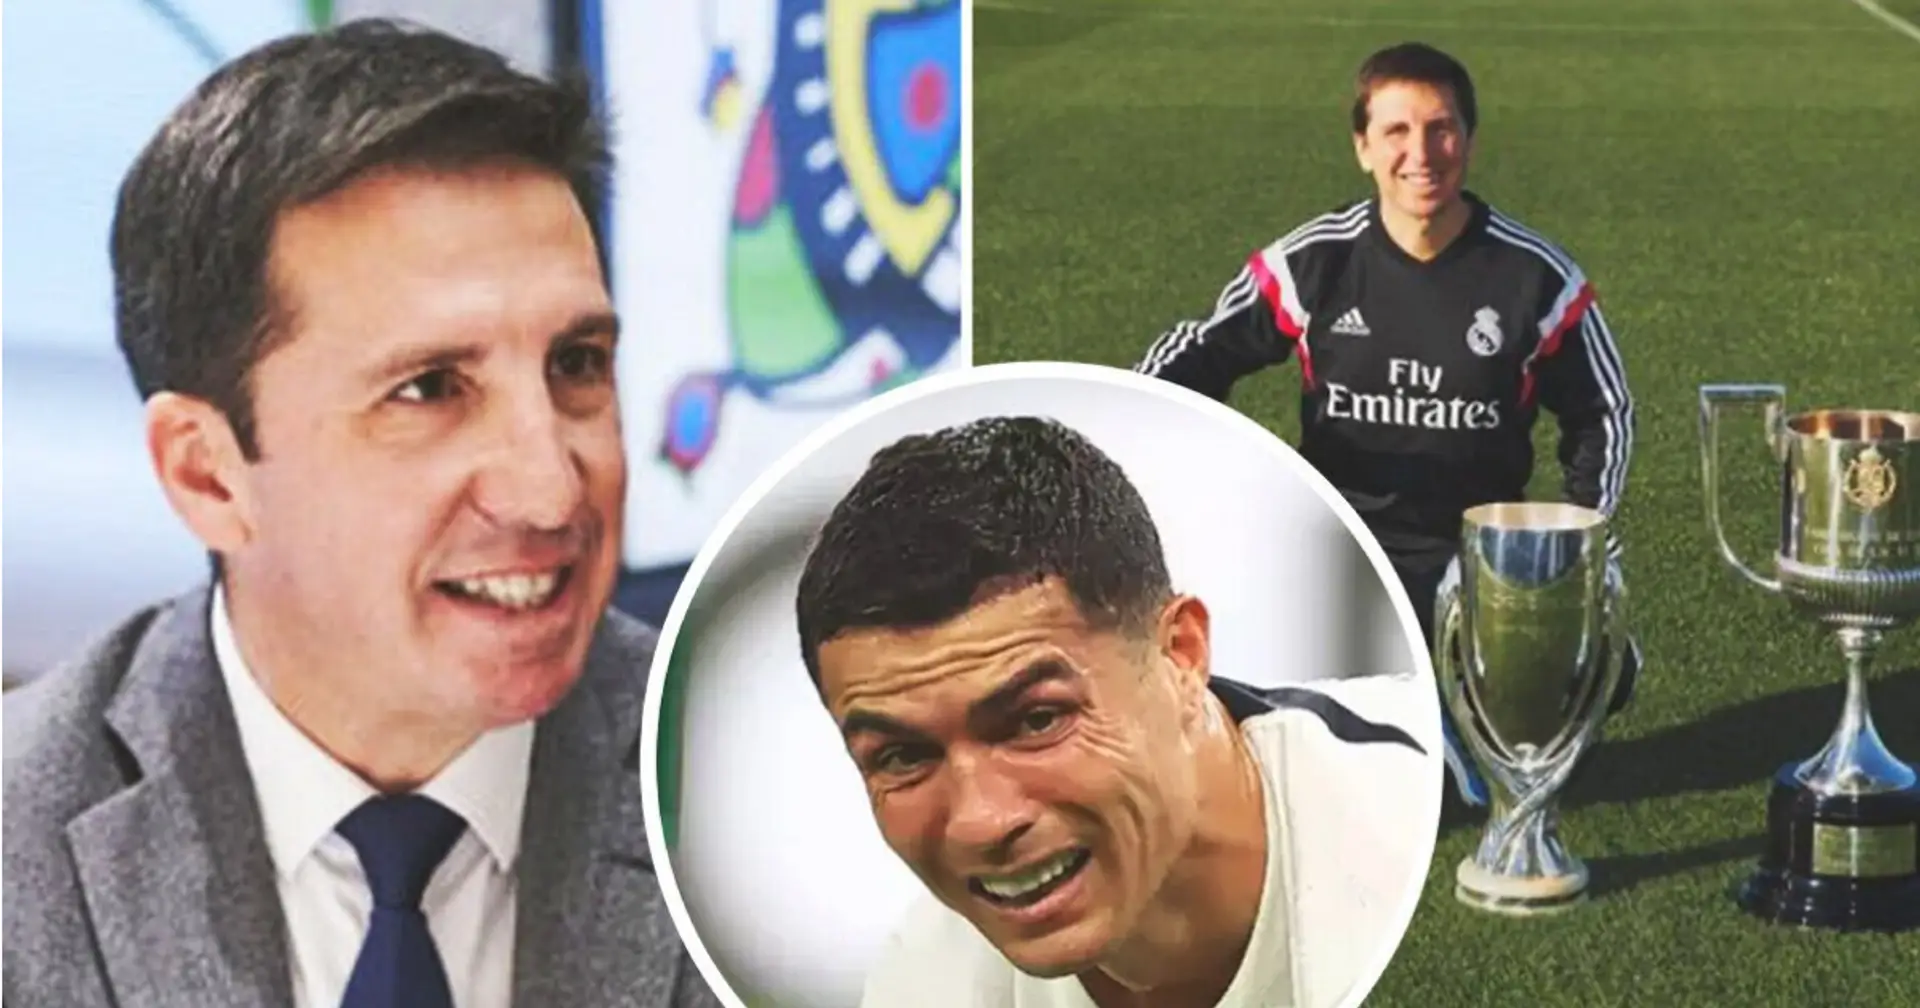 Der ehemalige Arzt von Real Madrid hat den besten Sportler genannt, mit dem er im Verein gearbeitet hat - es ist nicht Cristiano Ronaldo😲